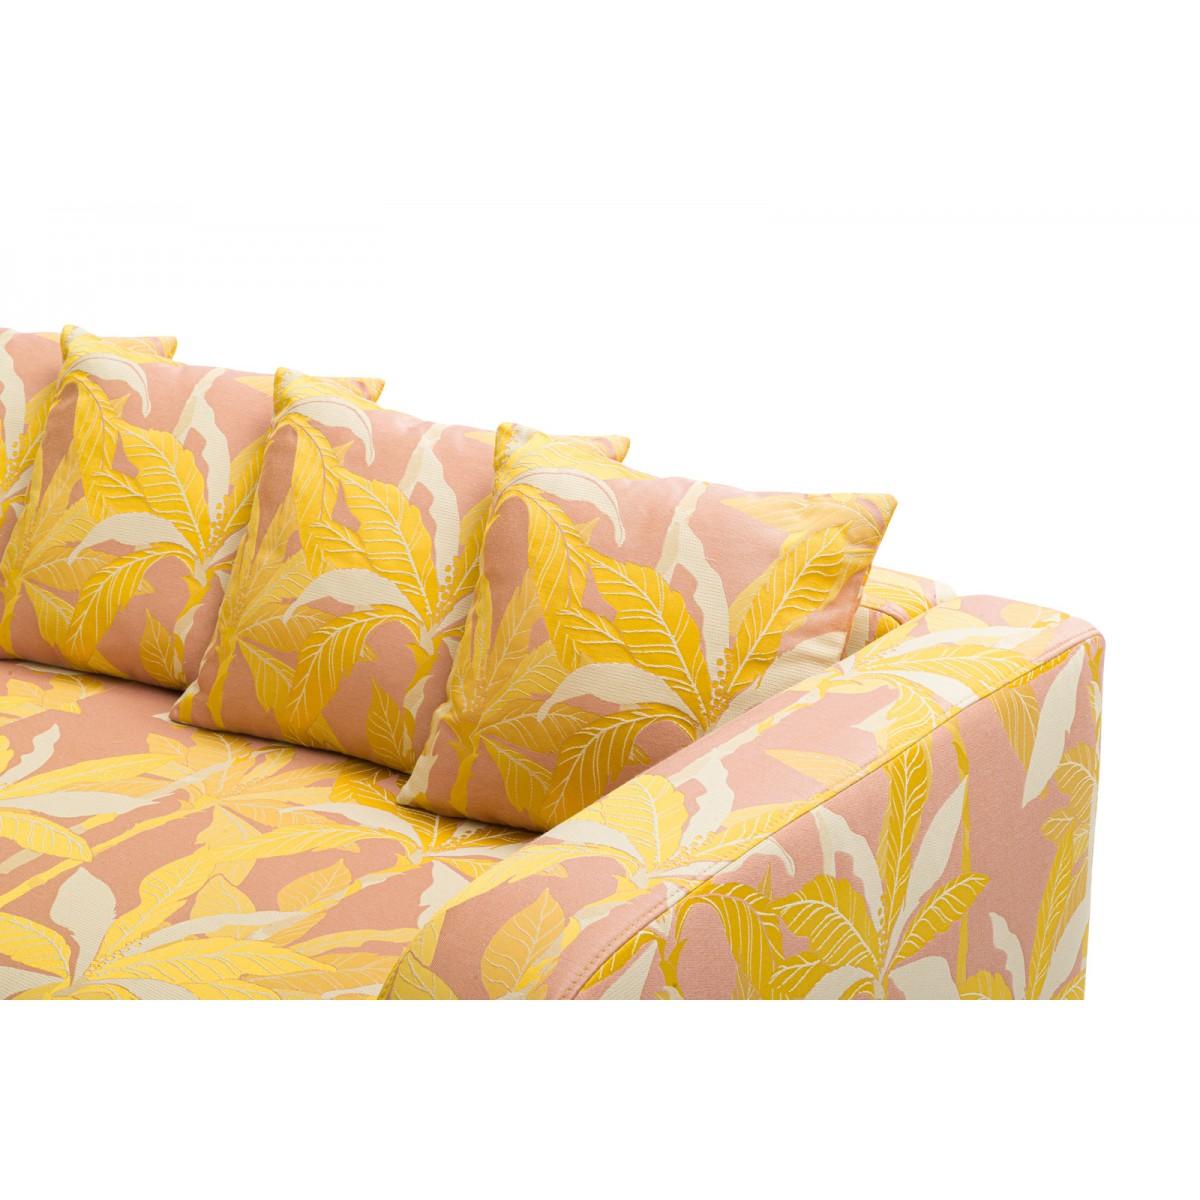 Popus Editions Graziella 3 Seater Sofa in Pink Miami Jacquard Fabric For Sale 2